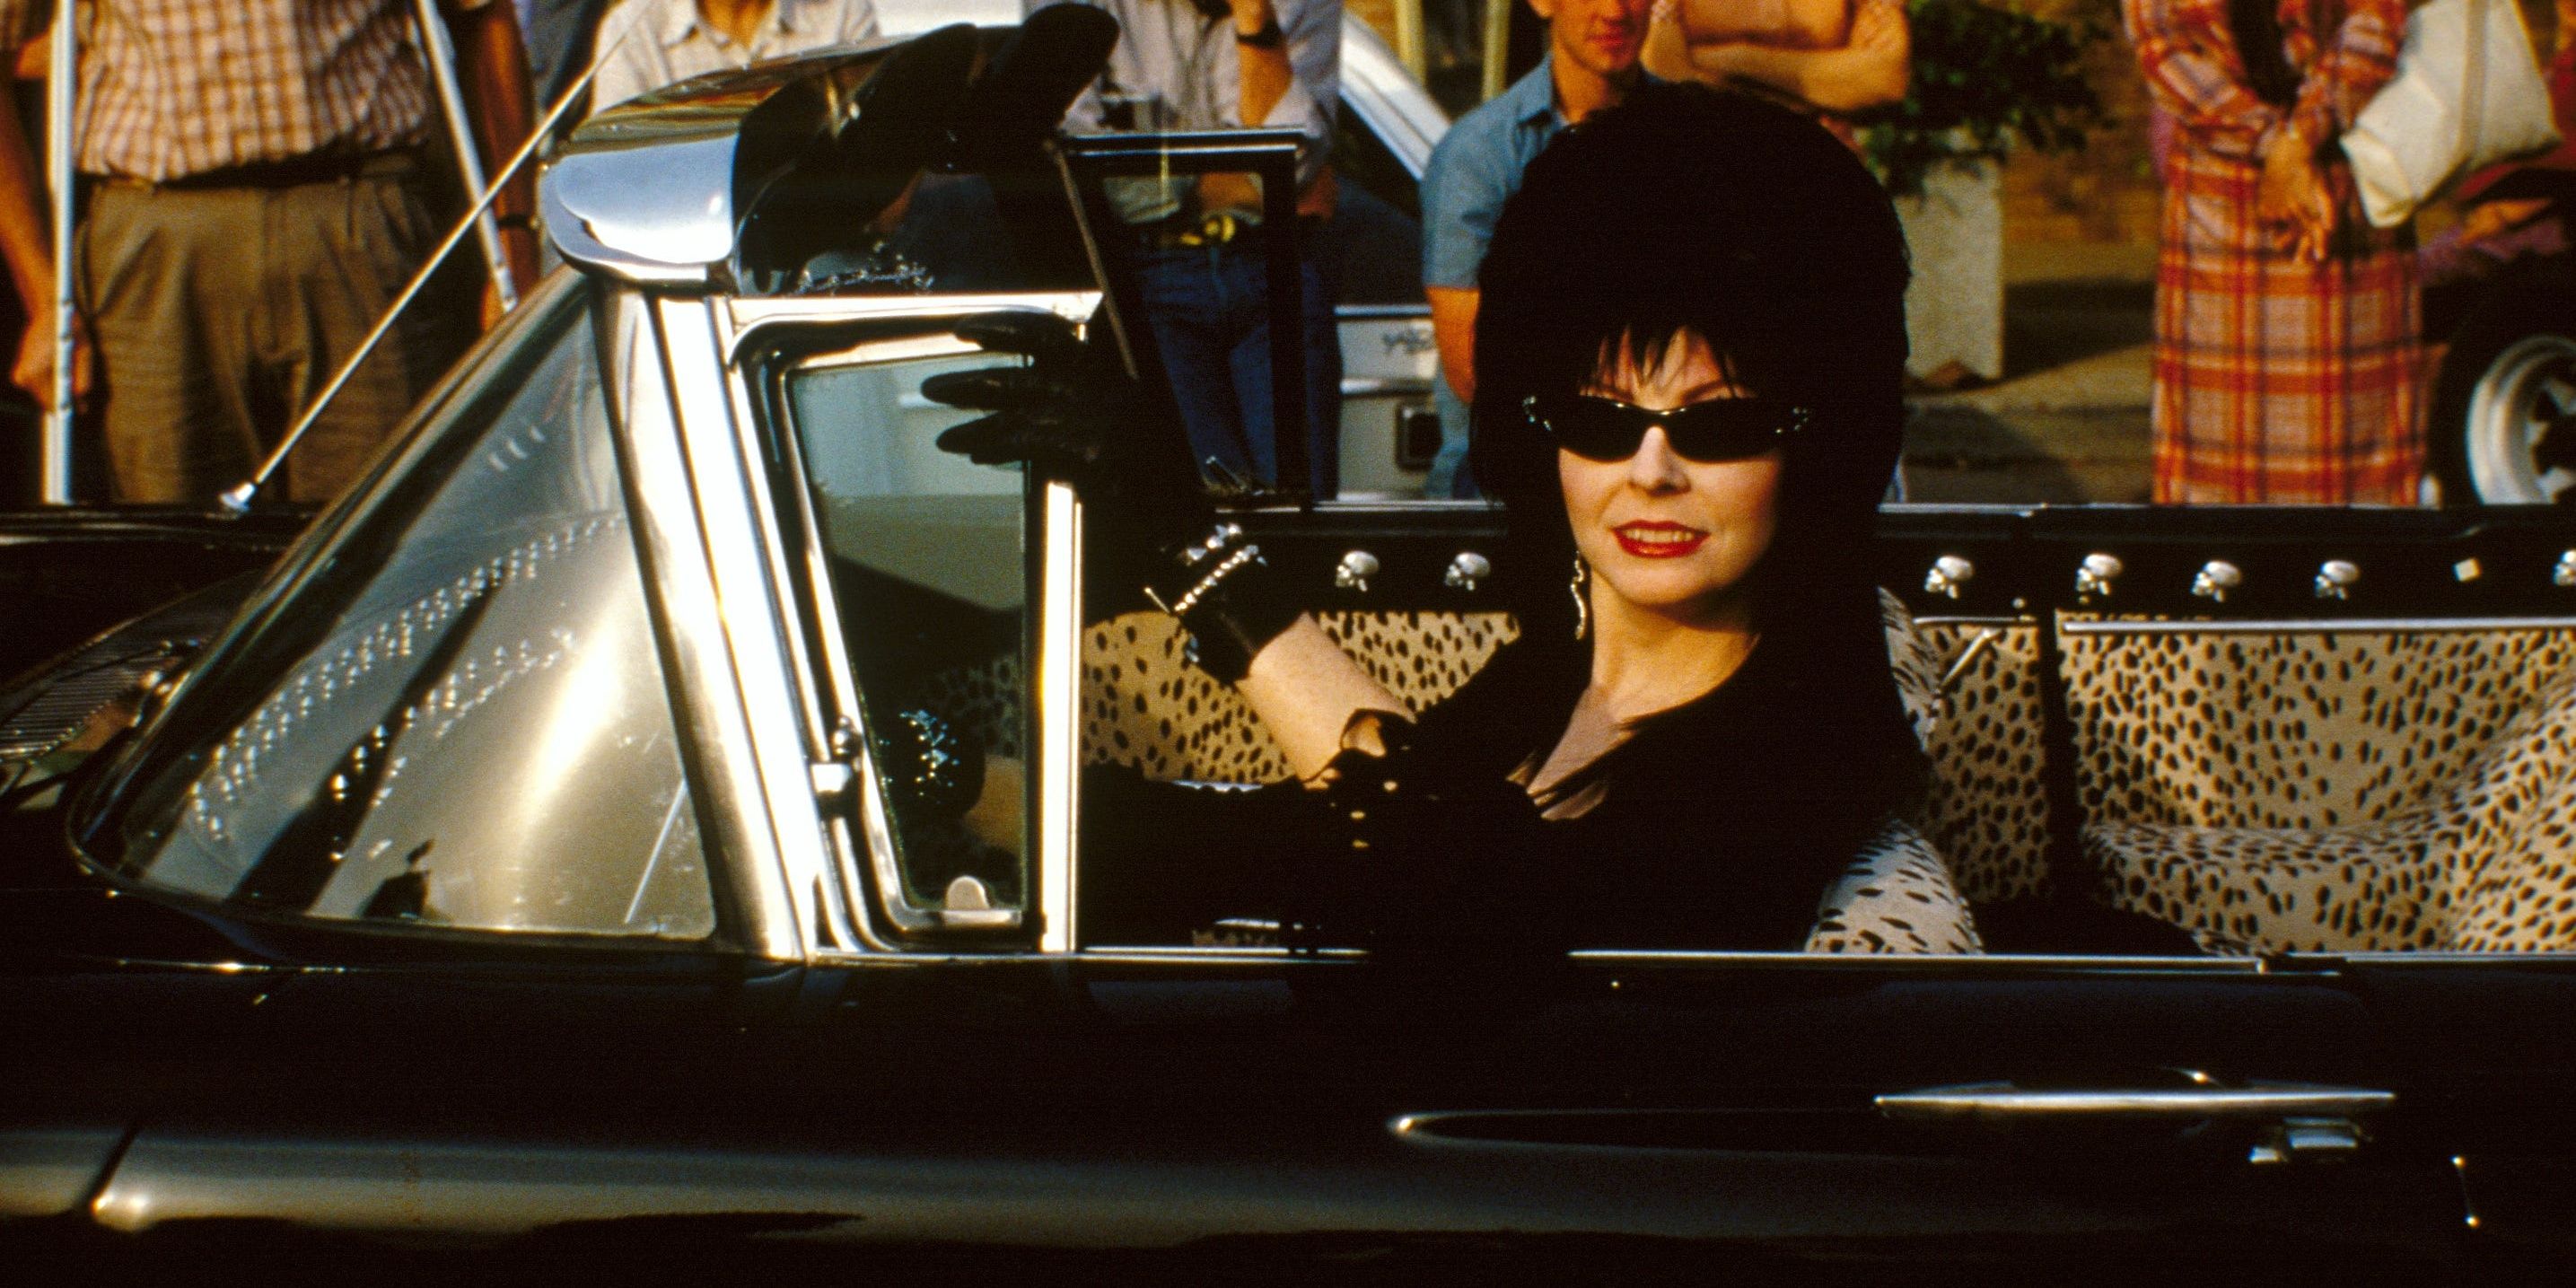 Chi è Elvira e perché è così importante?